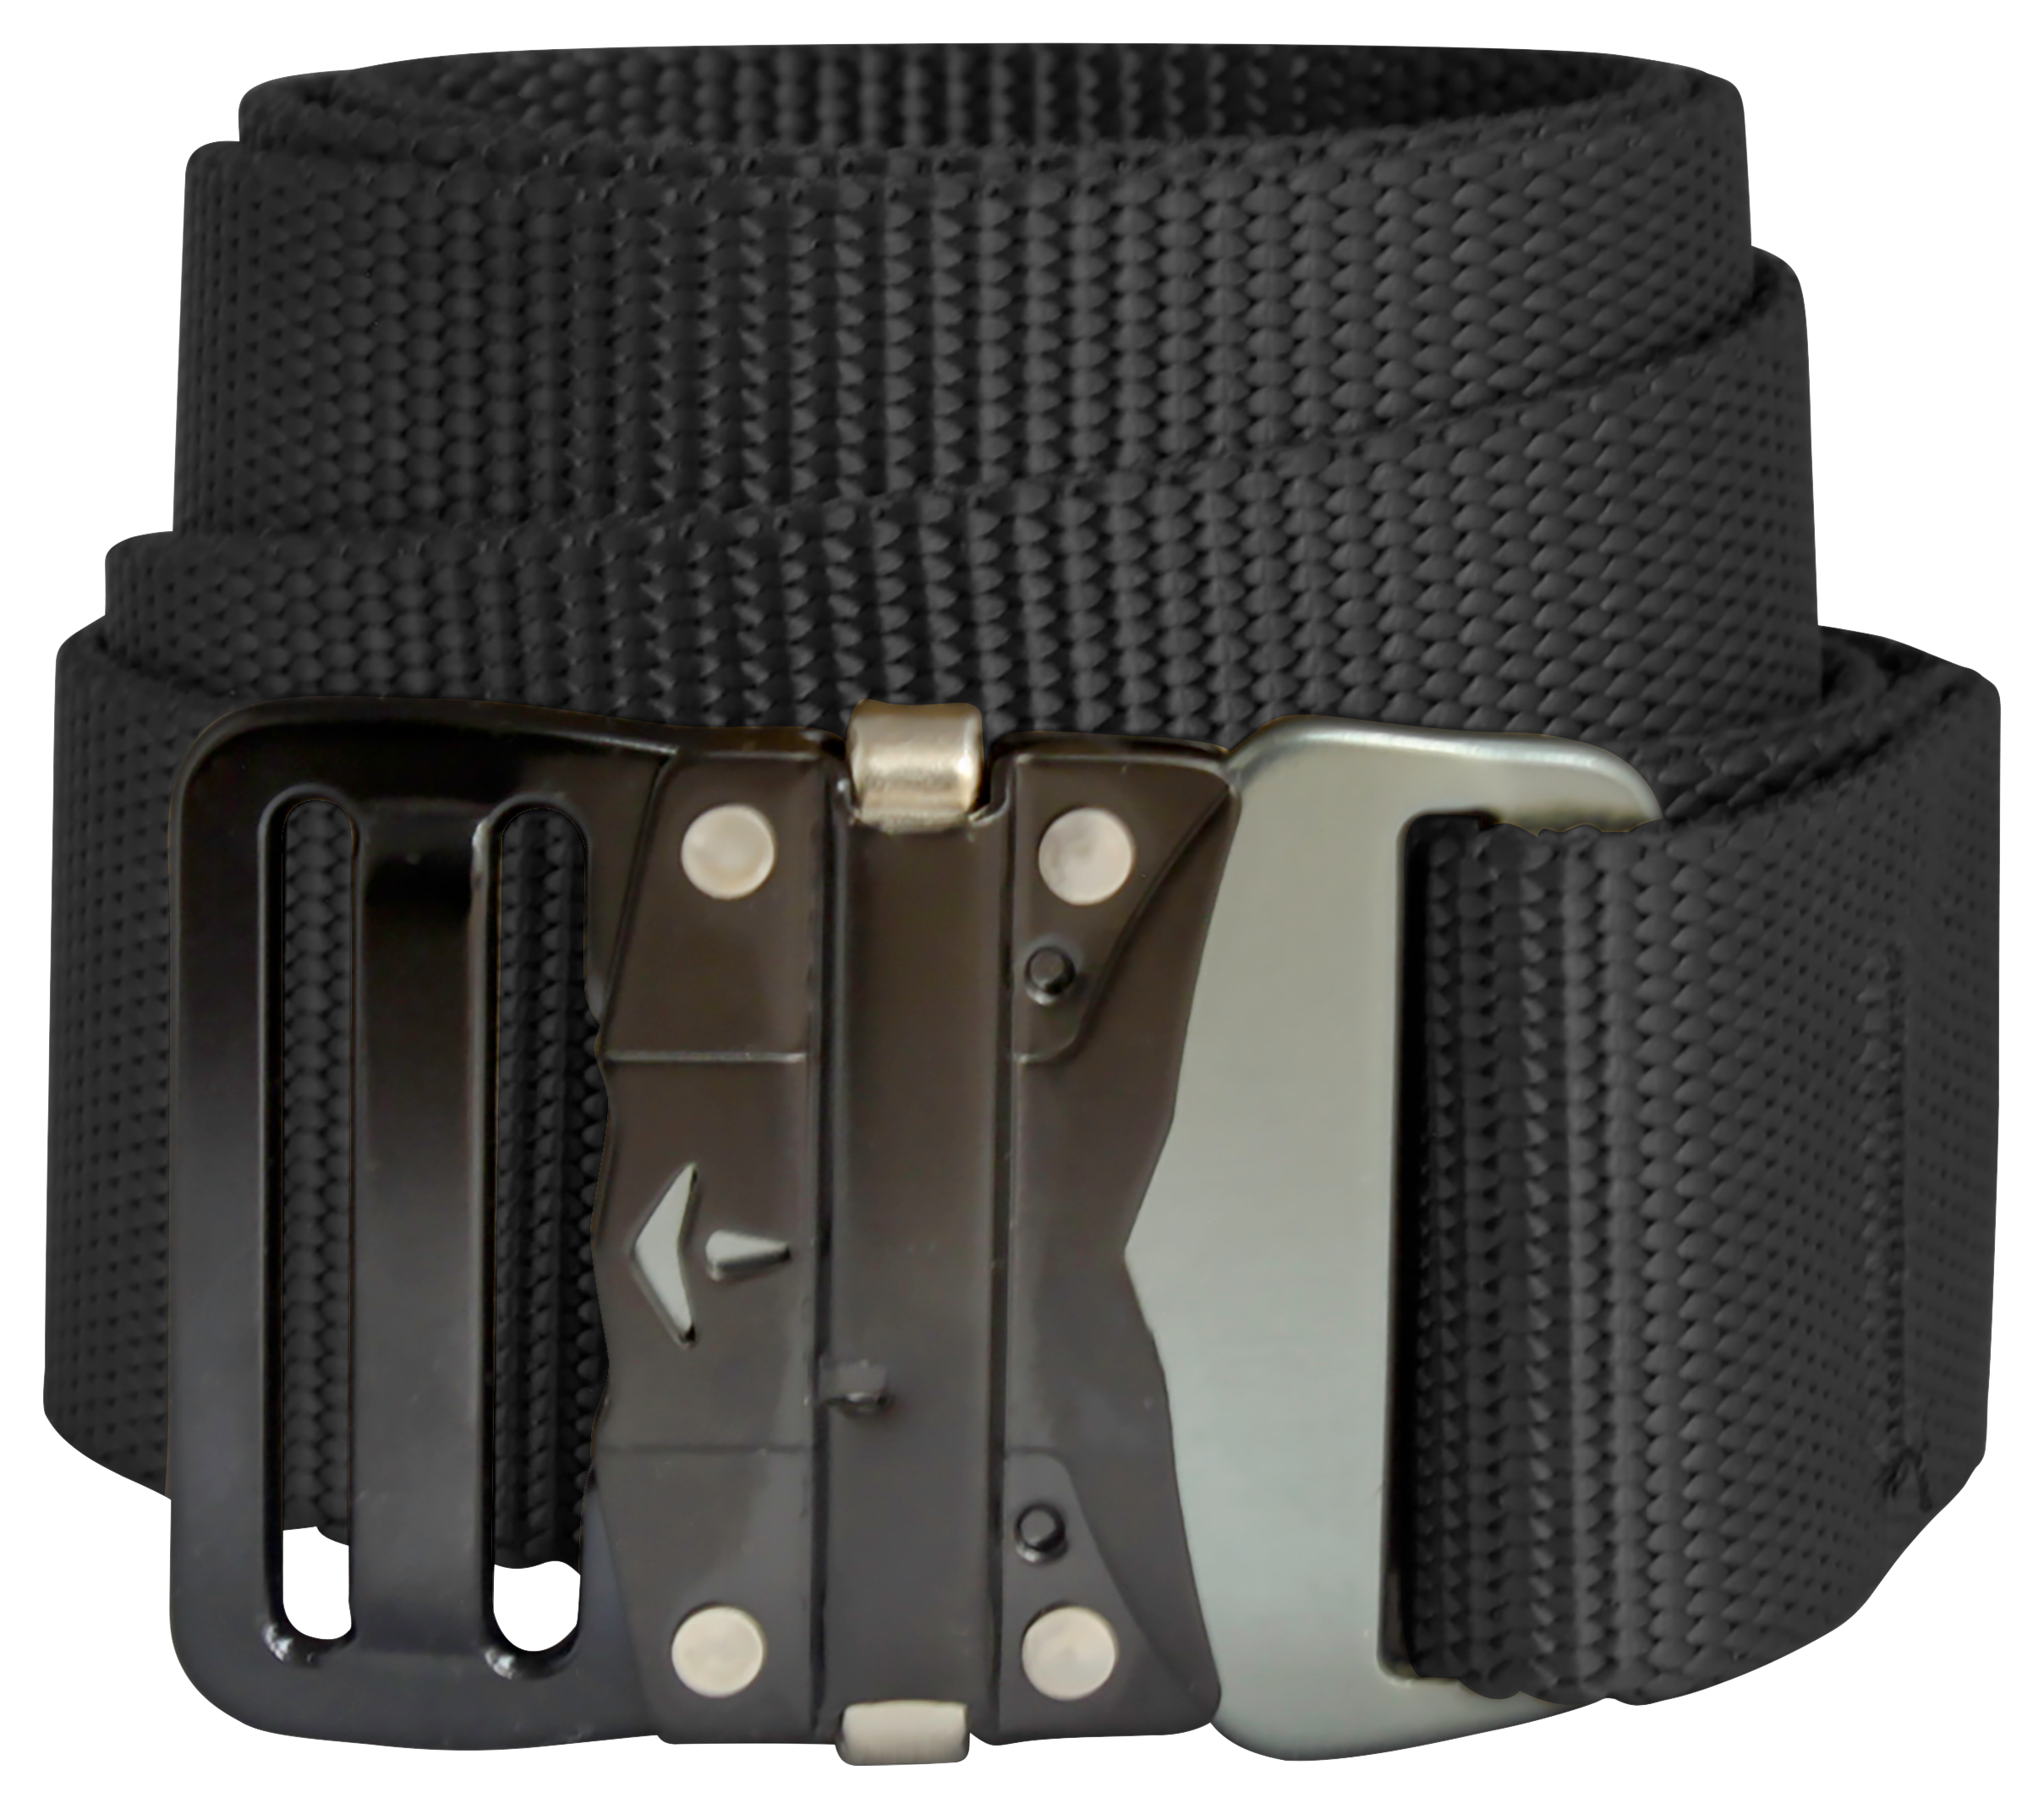 Bison Designs 38mm LoPro Buckle Belt for Men - Black - XL